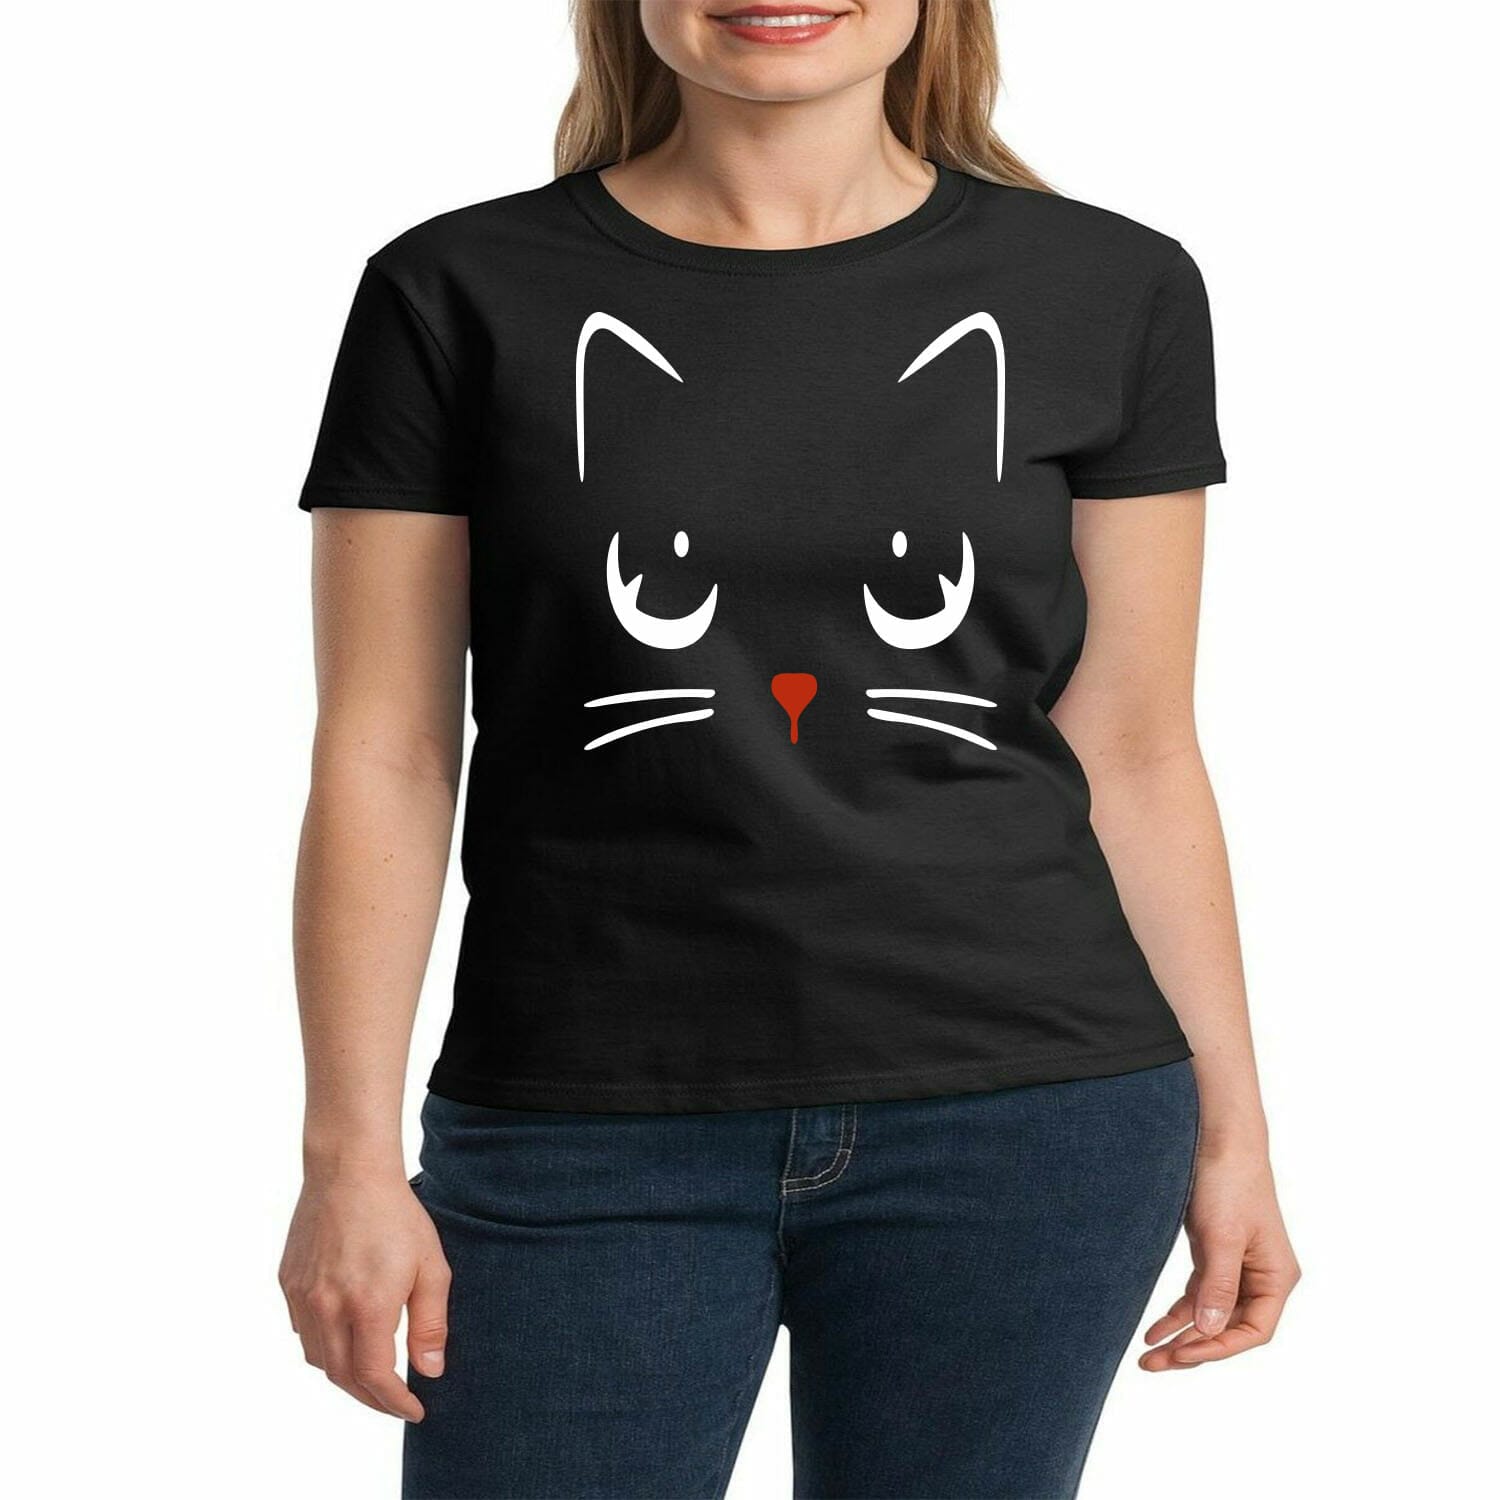 Cat Face tshirt design